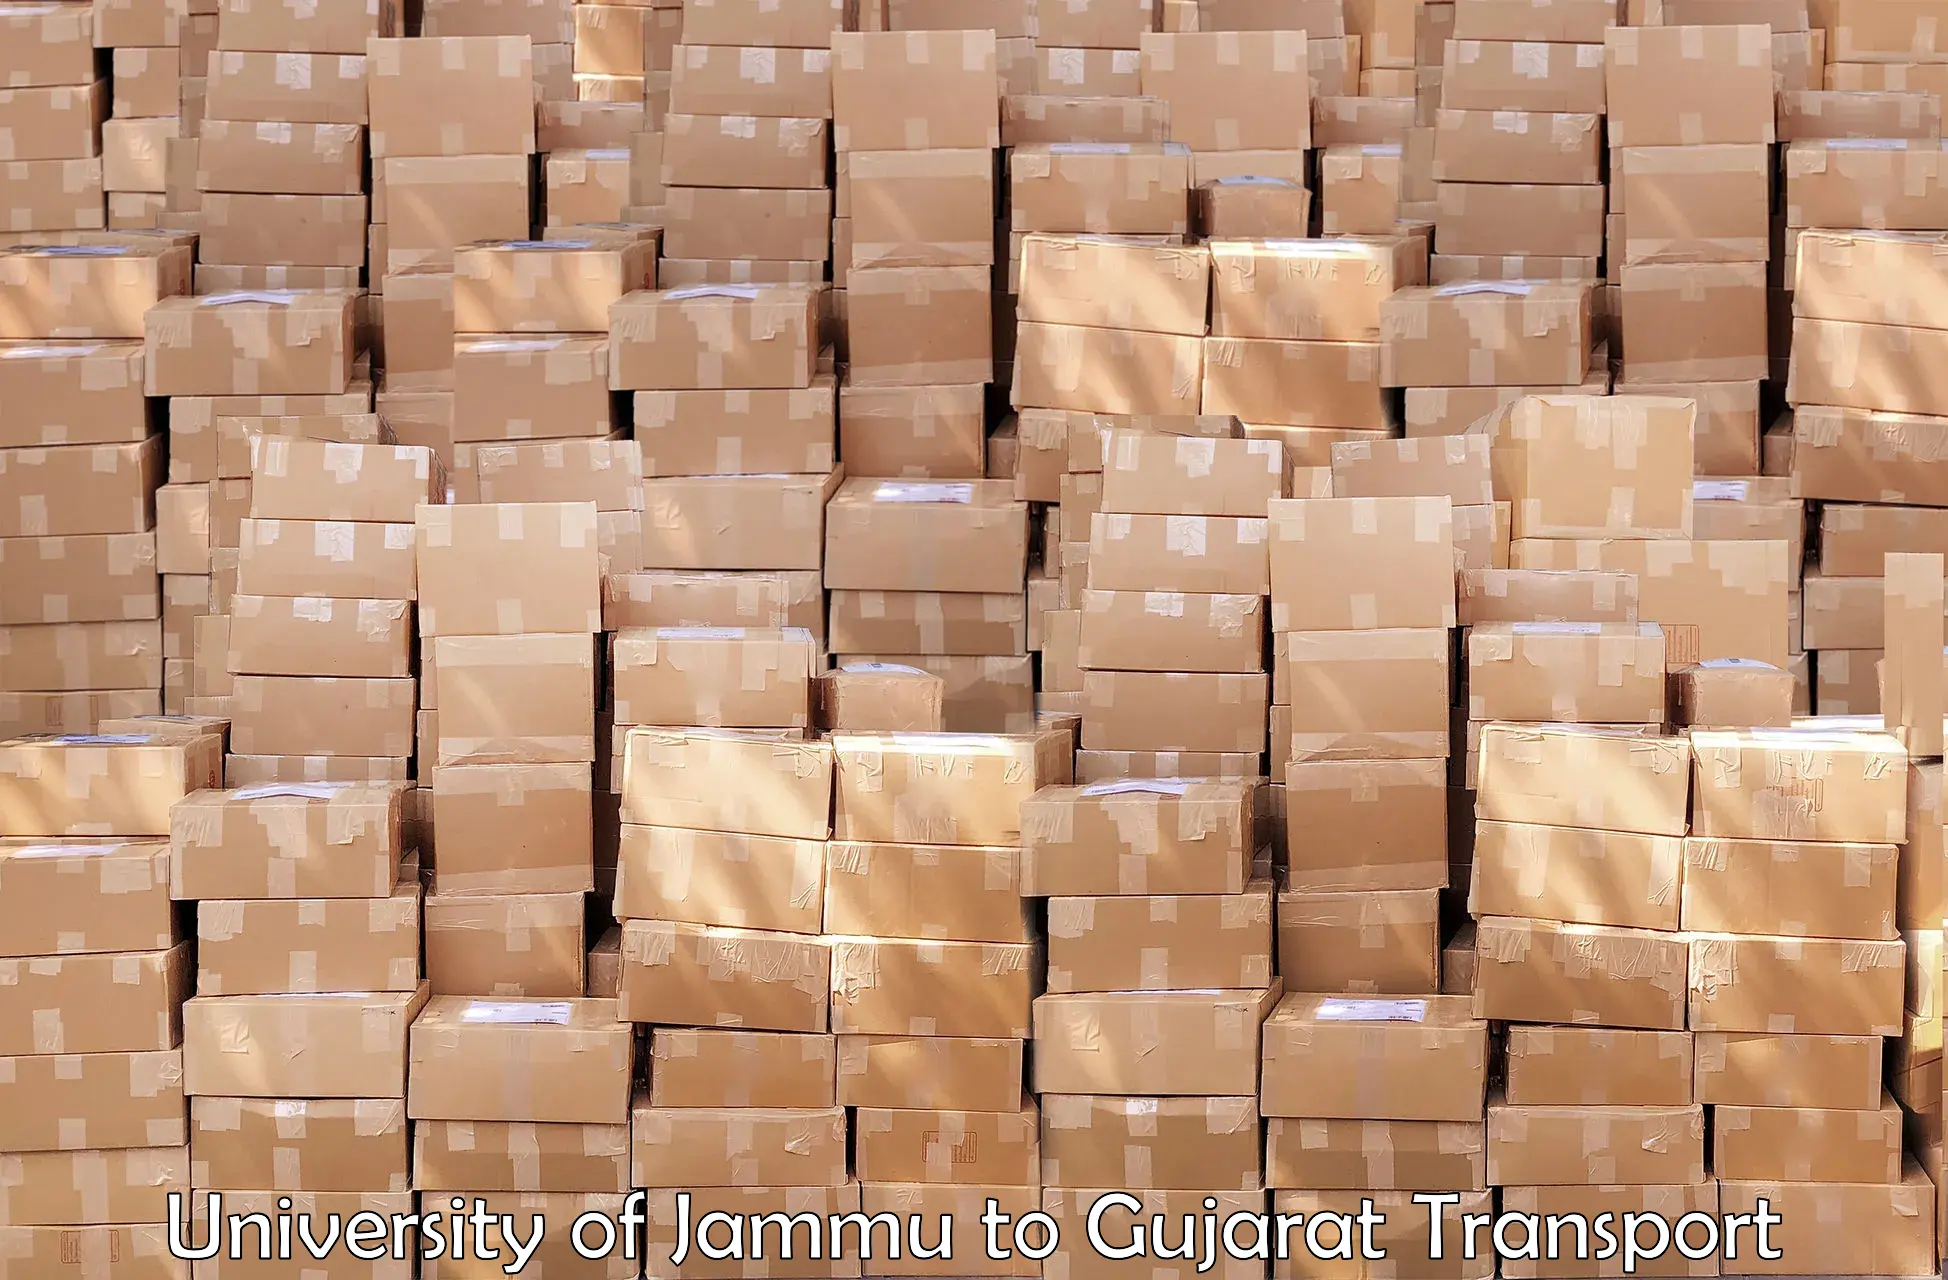 Nearby transport service University of Jammu to Gujarat